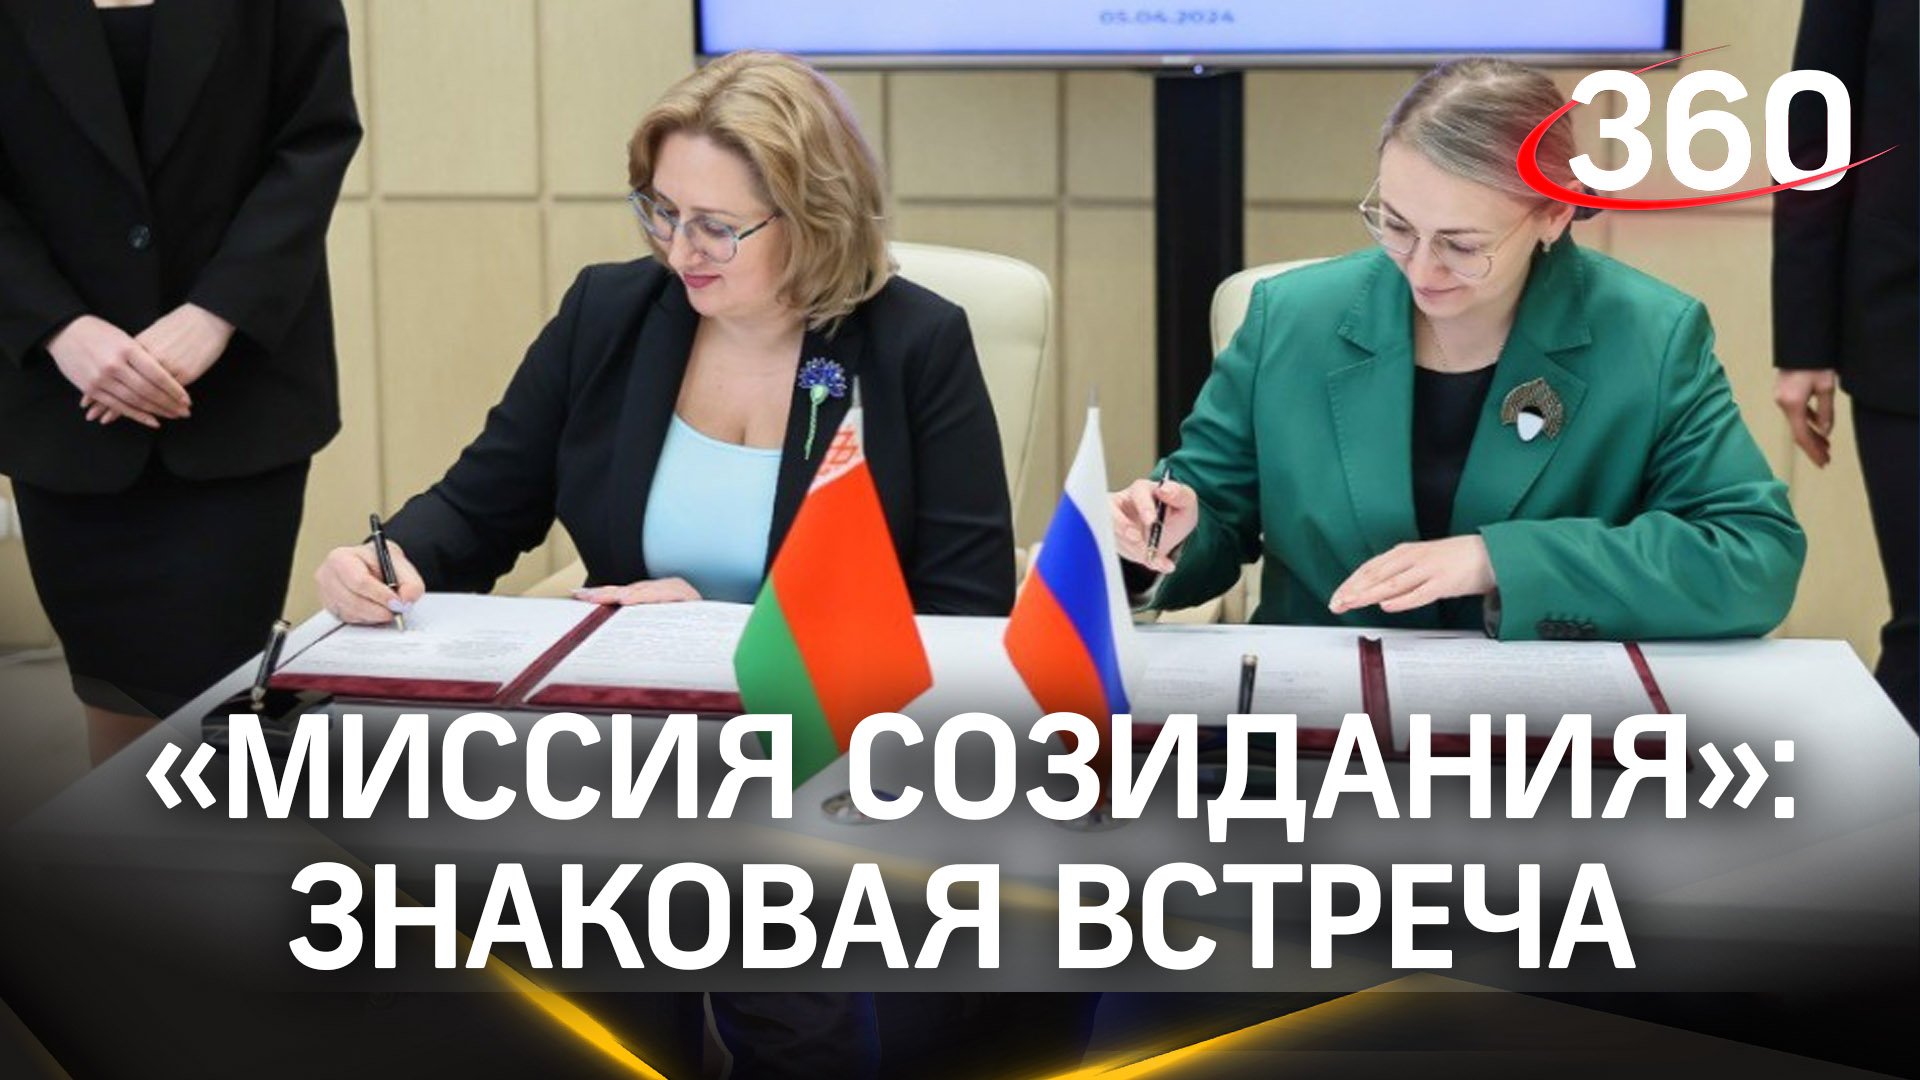 Совместная деятельность, международное сотрудничества: «Женщины России и Беларуси: миссия созидания»